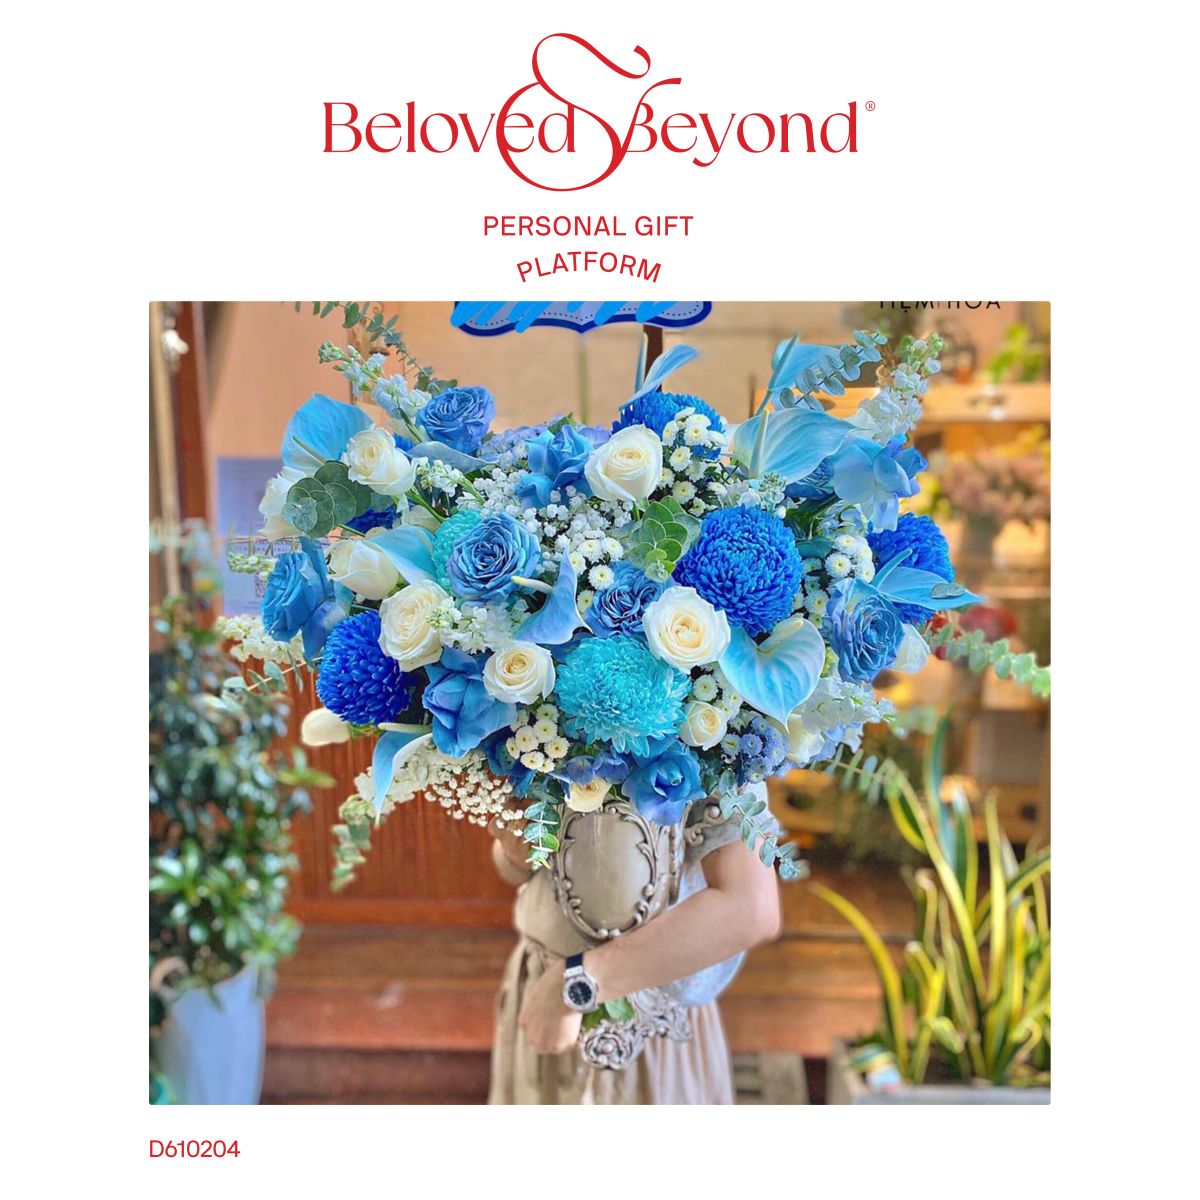 Hoa cúc mẫu đơn đẹp tại Beloved & Beyond